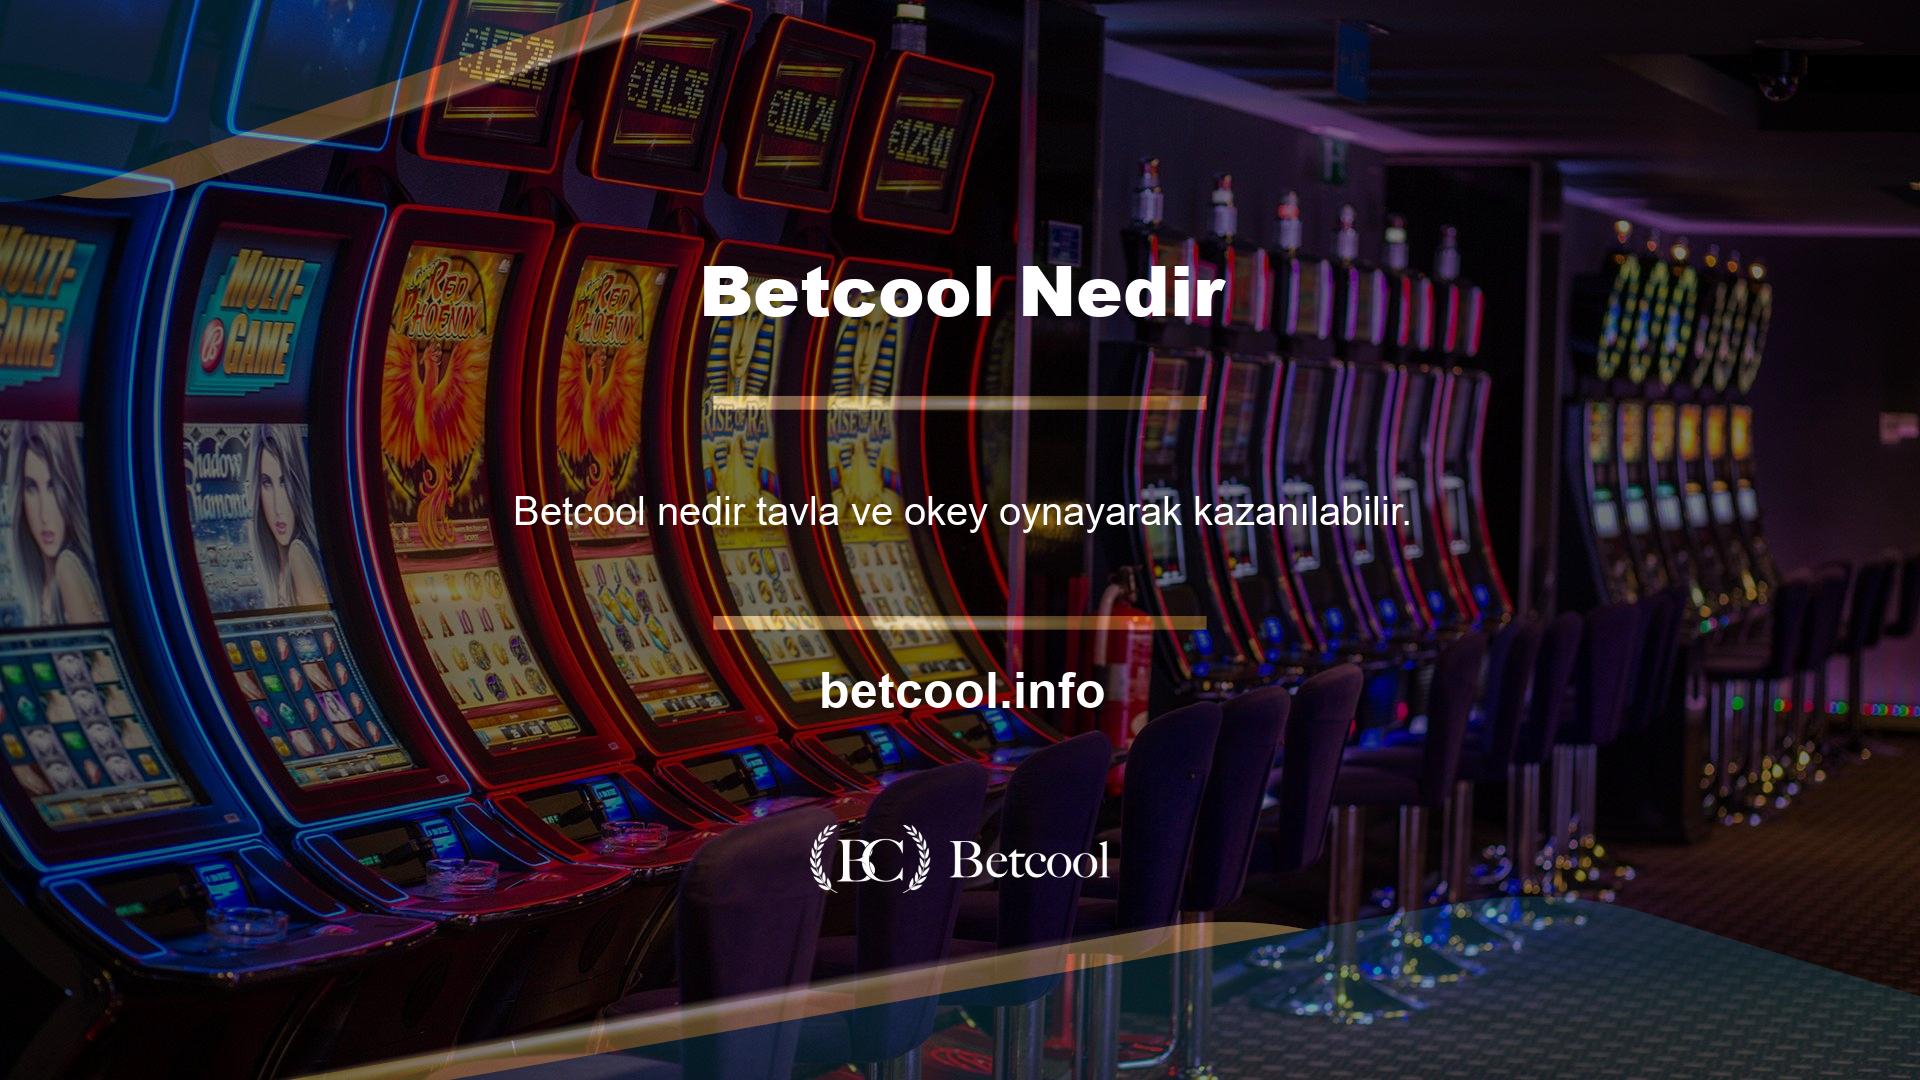 Betcool internet tabanlı bir sisteme sahiptir